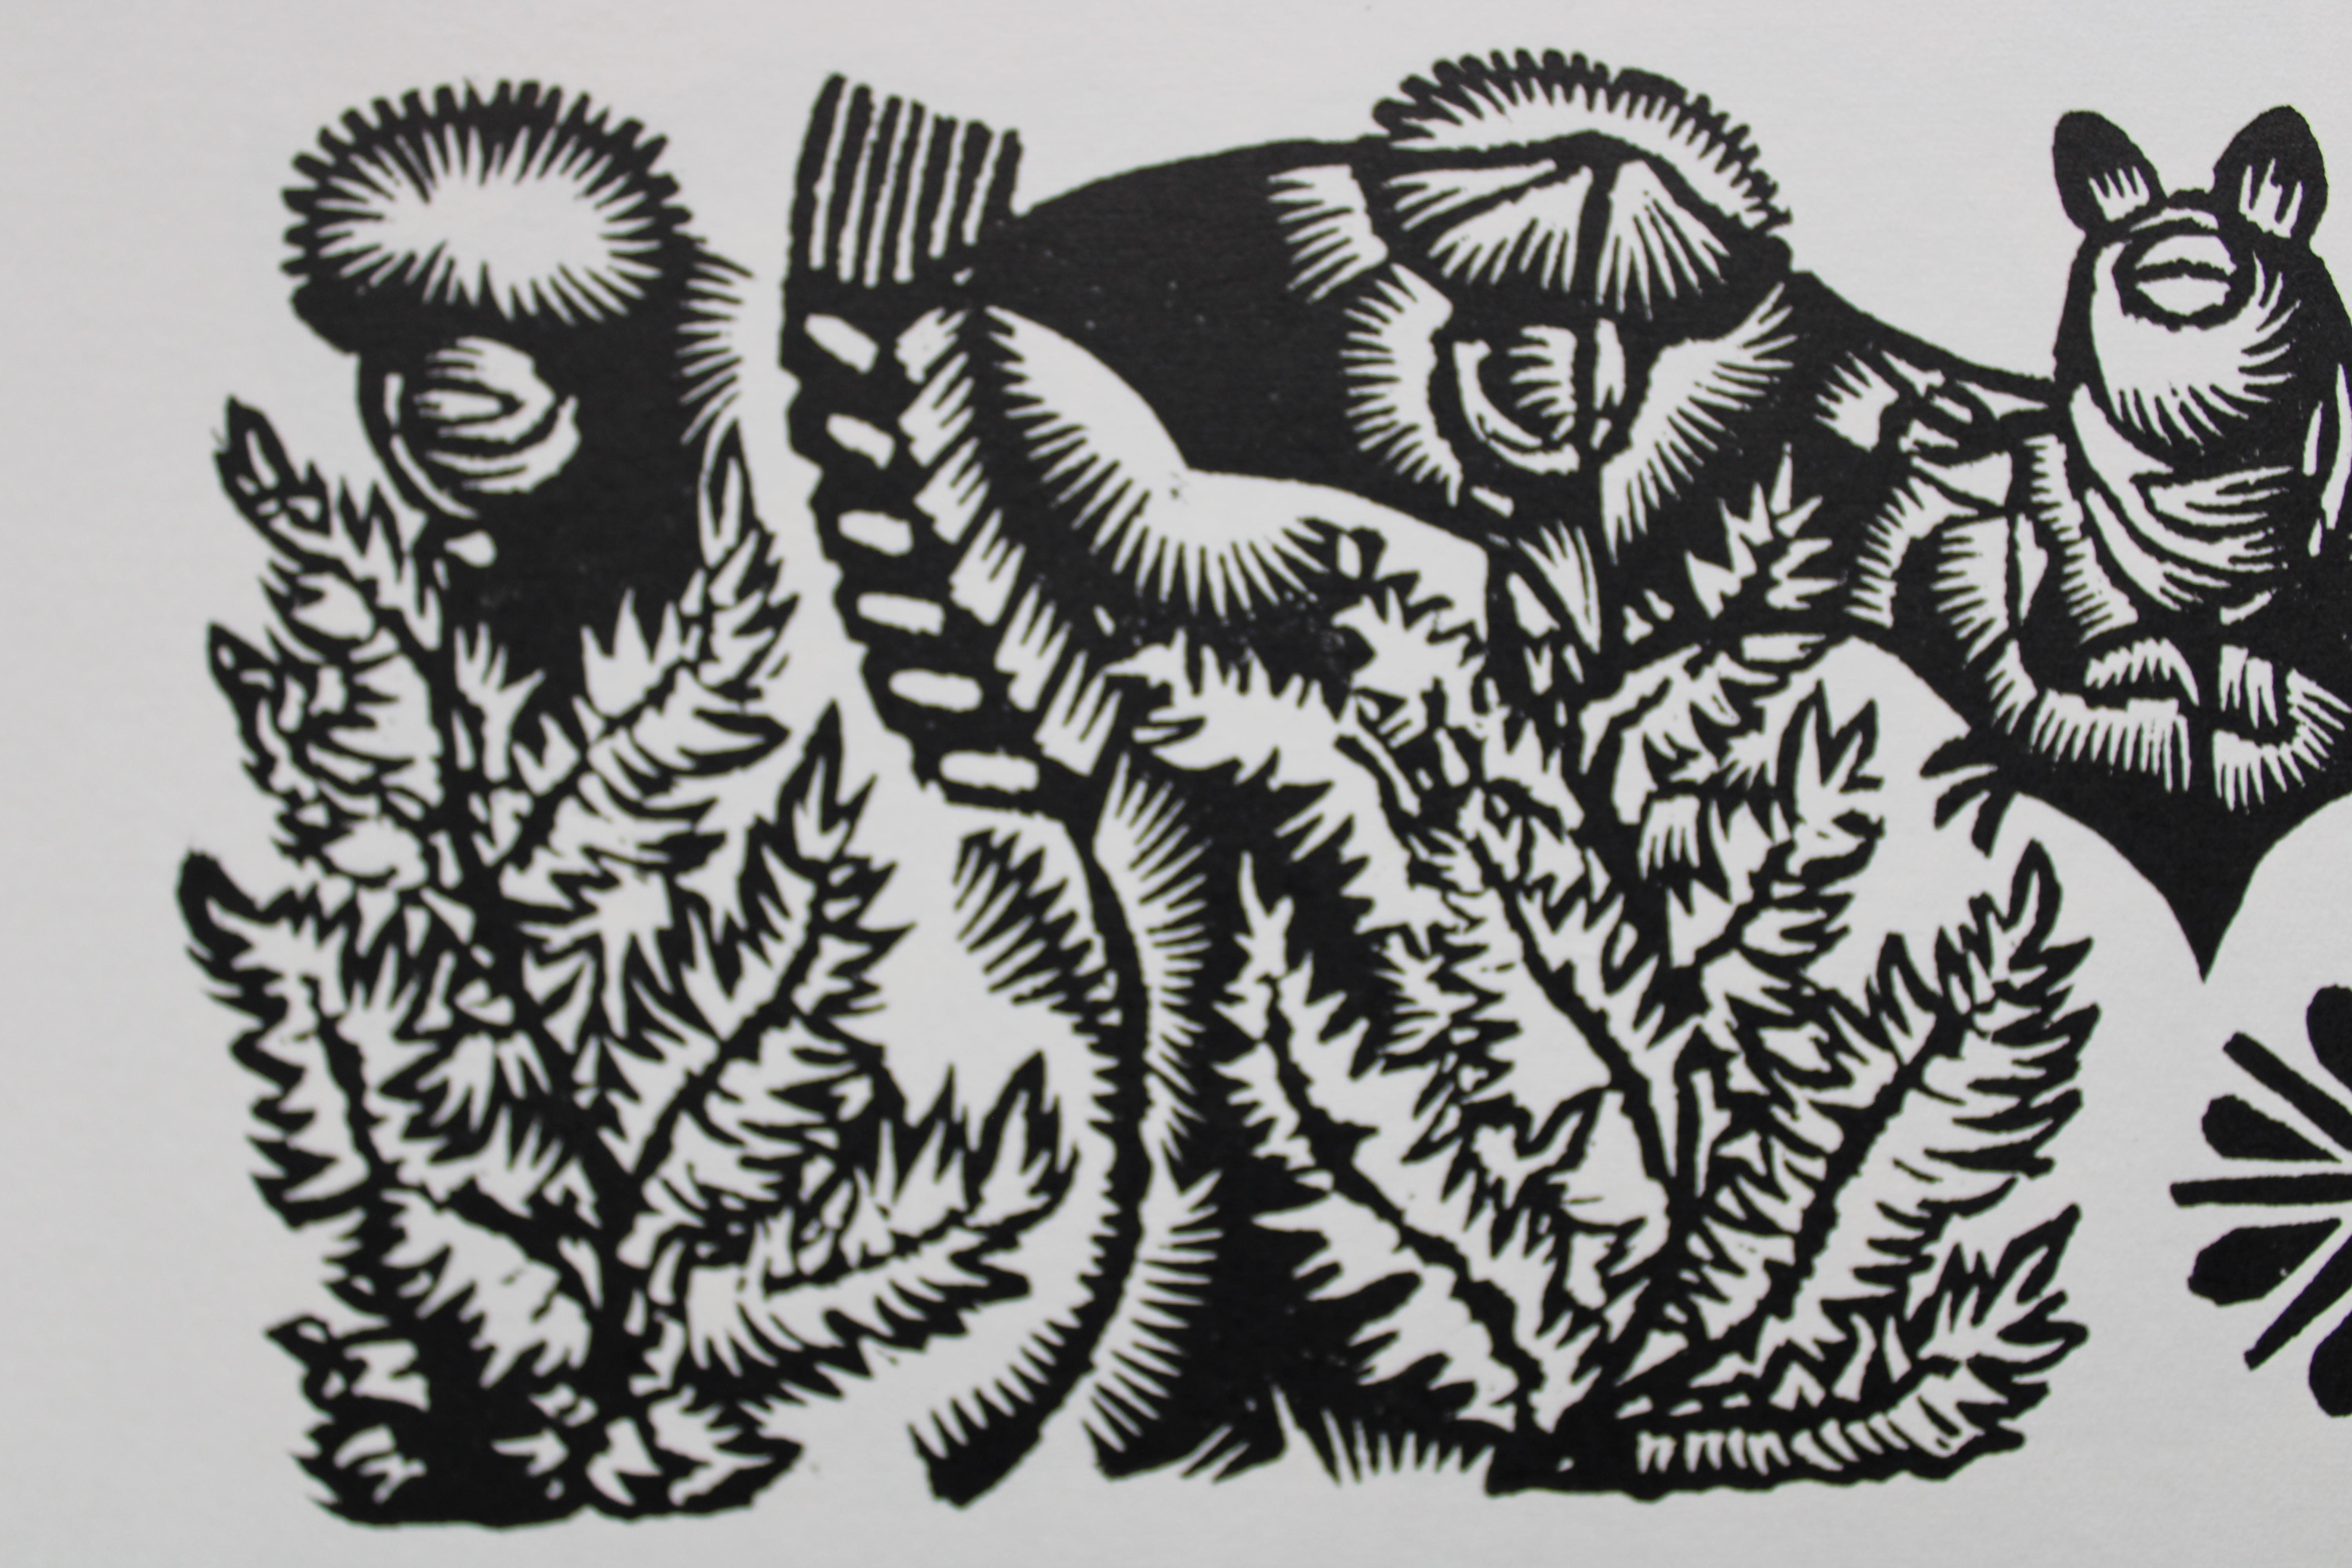 Fledermaus im Wiege. 1982. Papier, Linolschnitt, 20x34 cm (Grau), Print, von Dainis Rozkalns